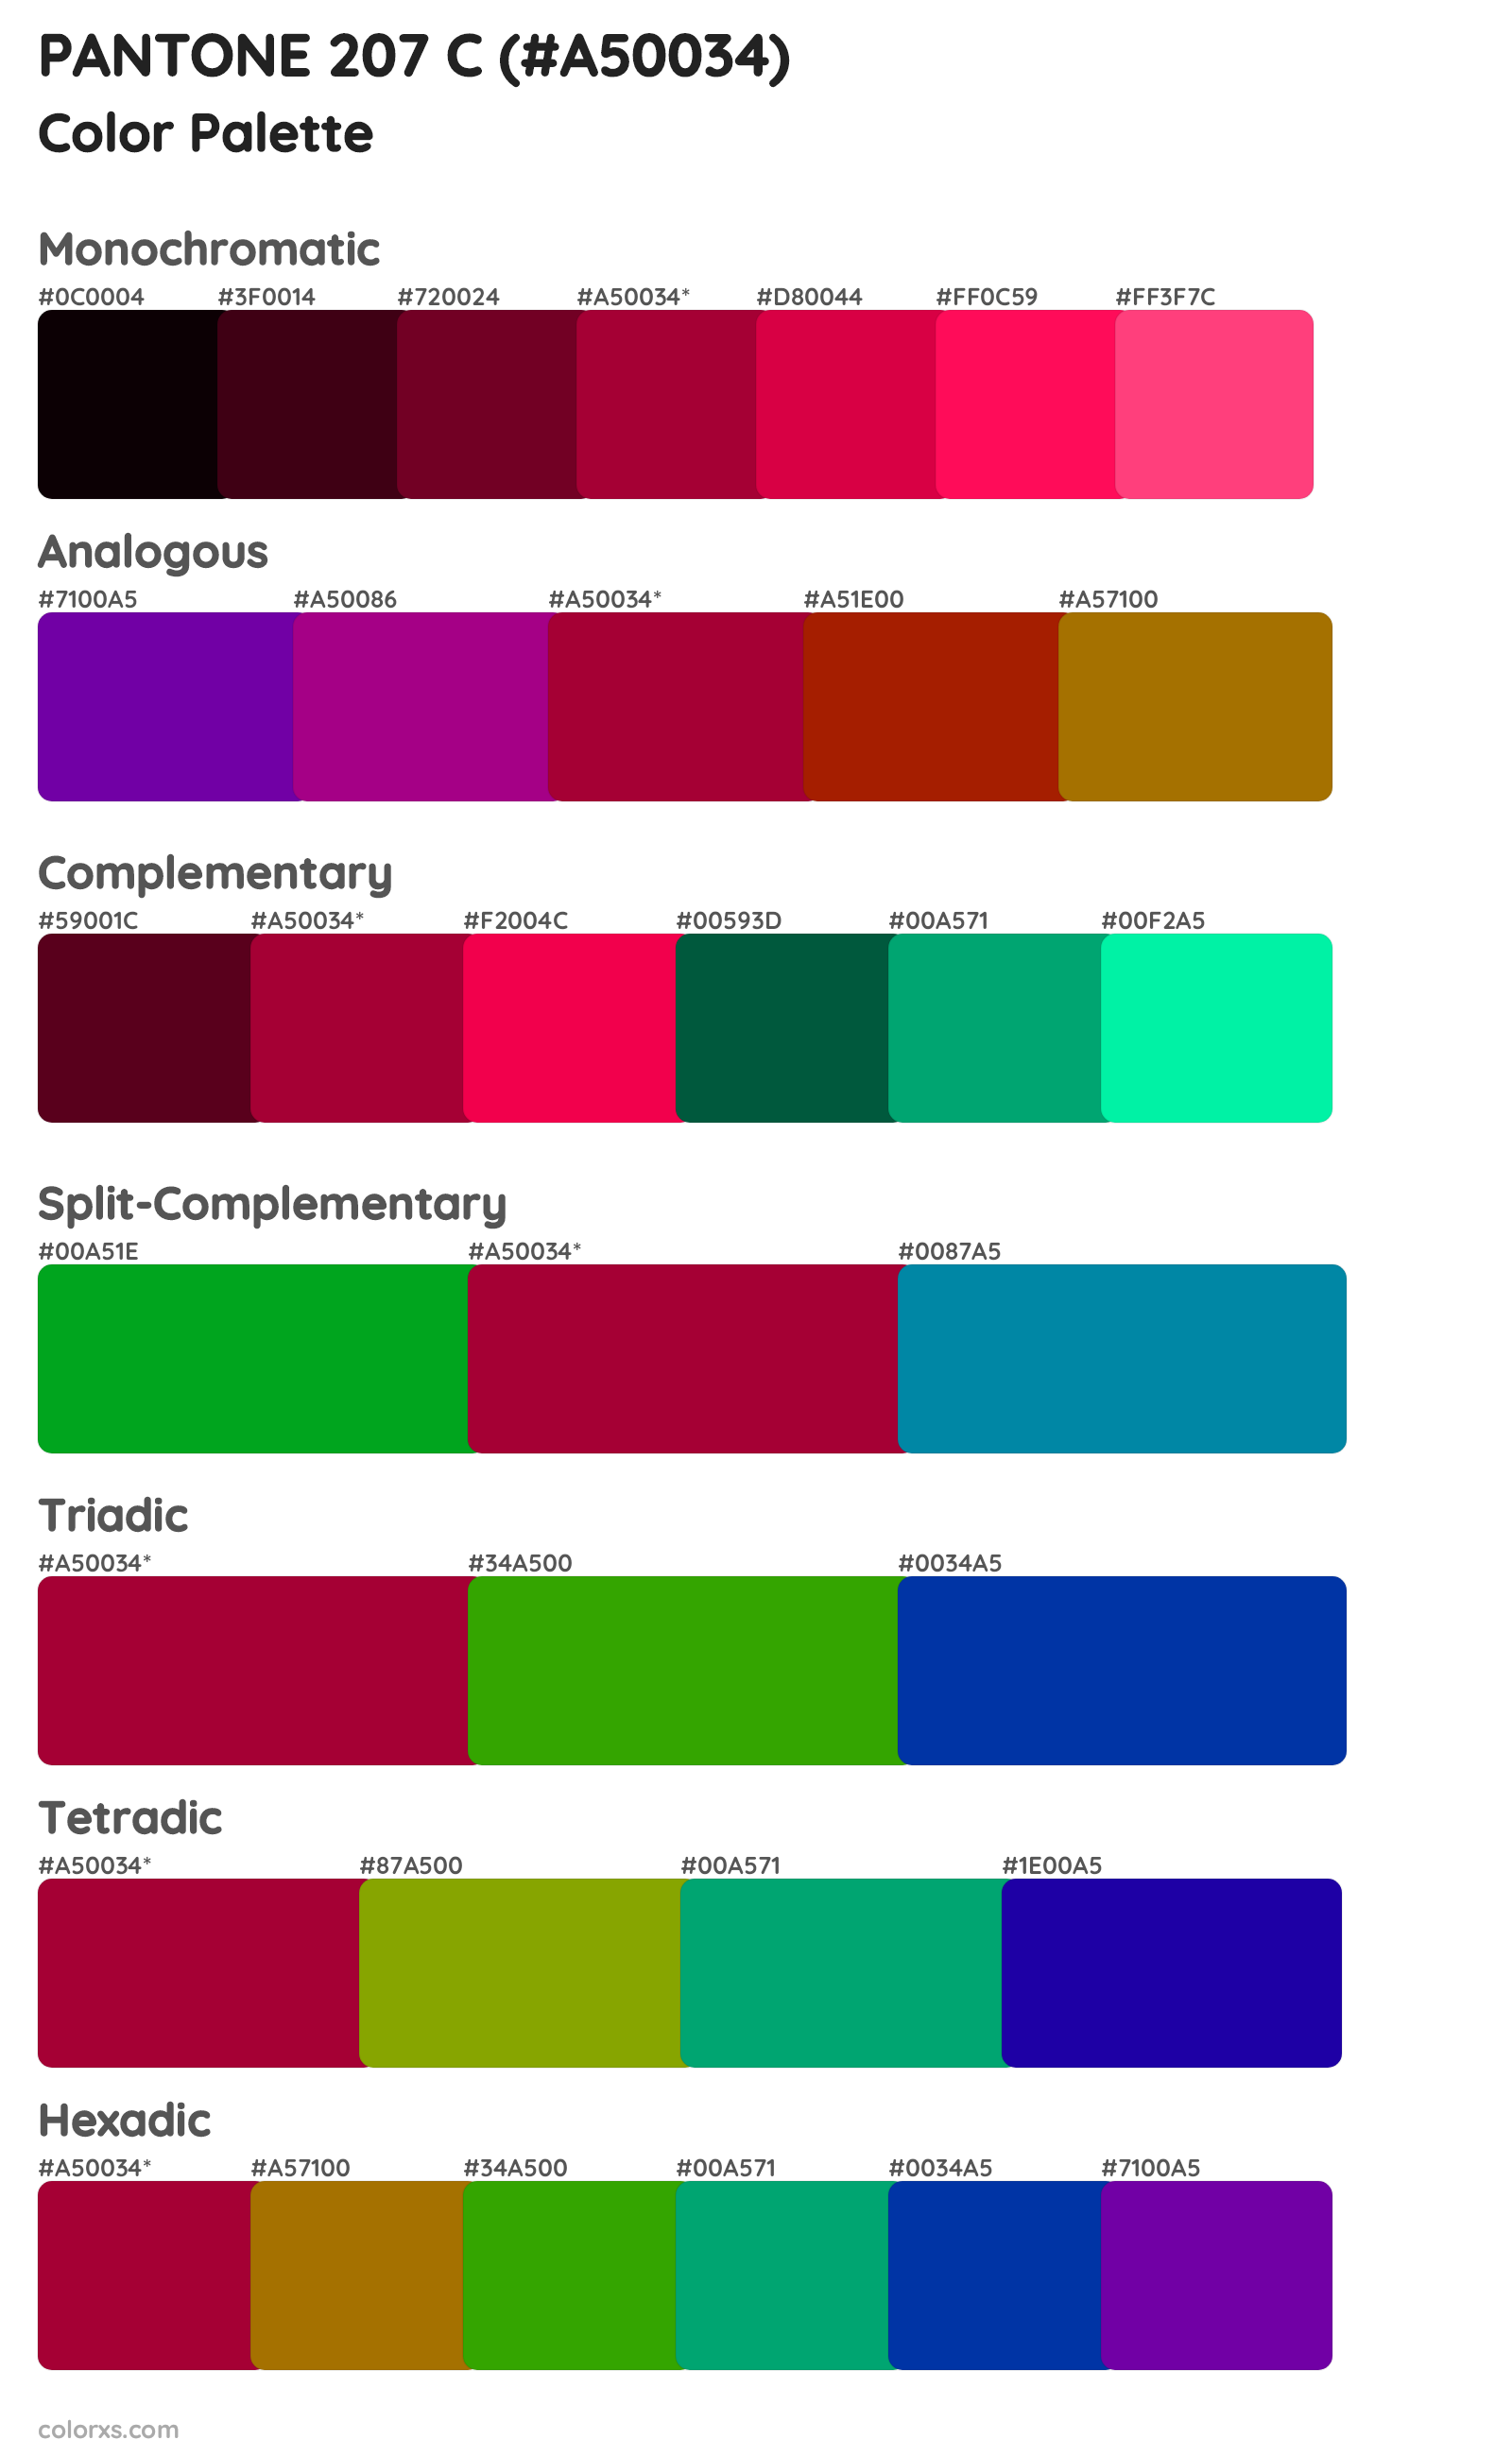 PANTONE 207 C Color Scheme Palettes